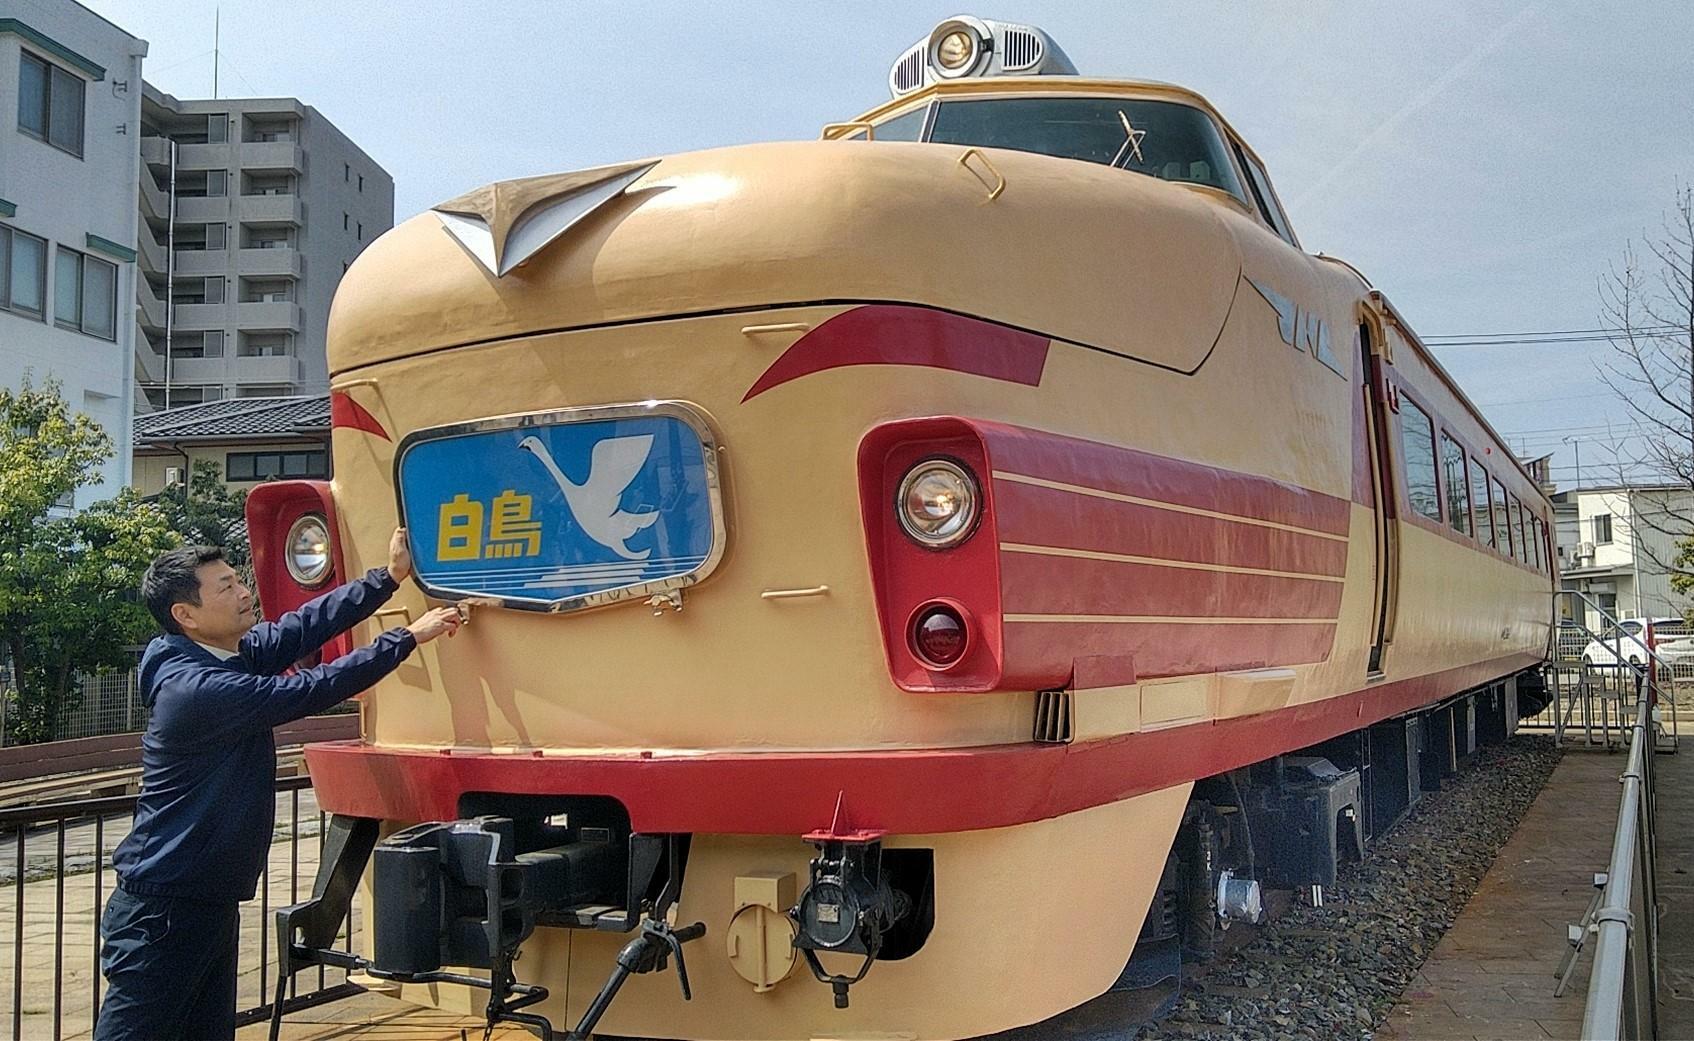 「土居原ボンネット広場」にある旧国鉄のボンネット型特急電車の先頭車両「クハ489－501」と岩谷さん